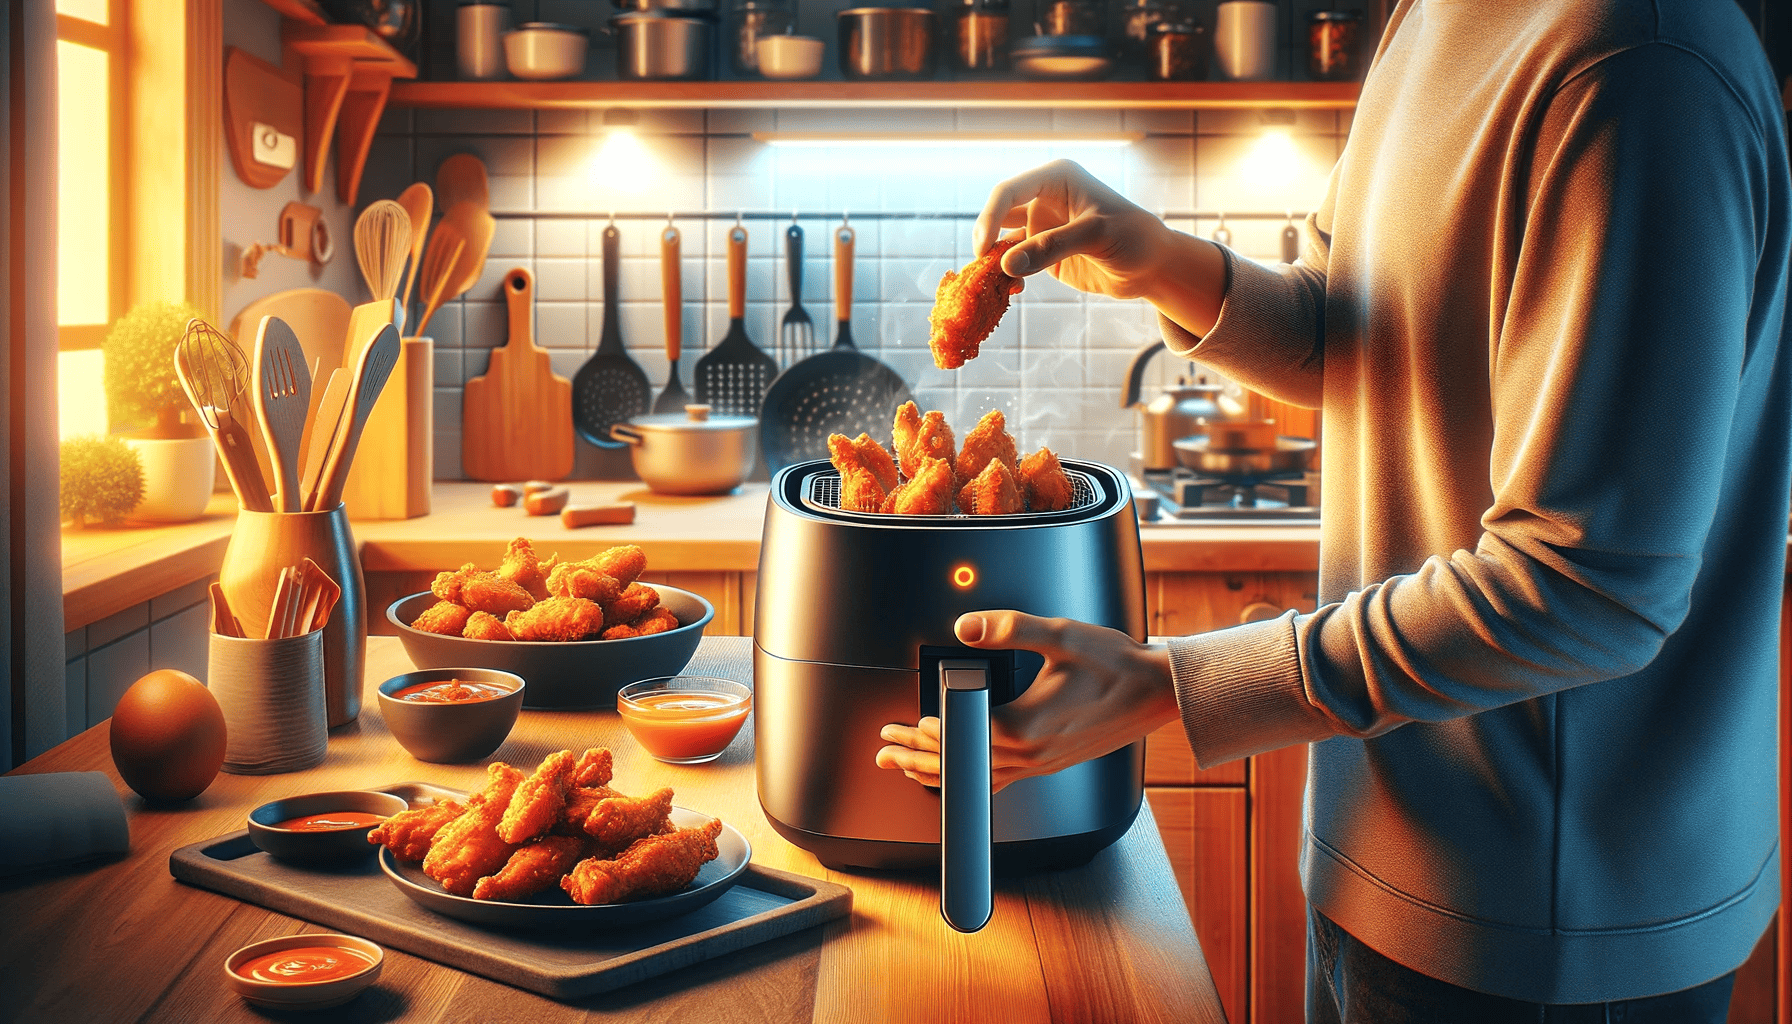 How to Reheat Orange Chicken in Air Fryer